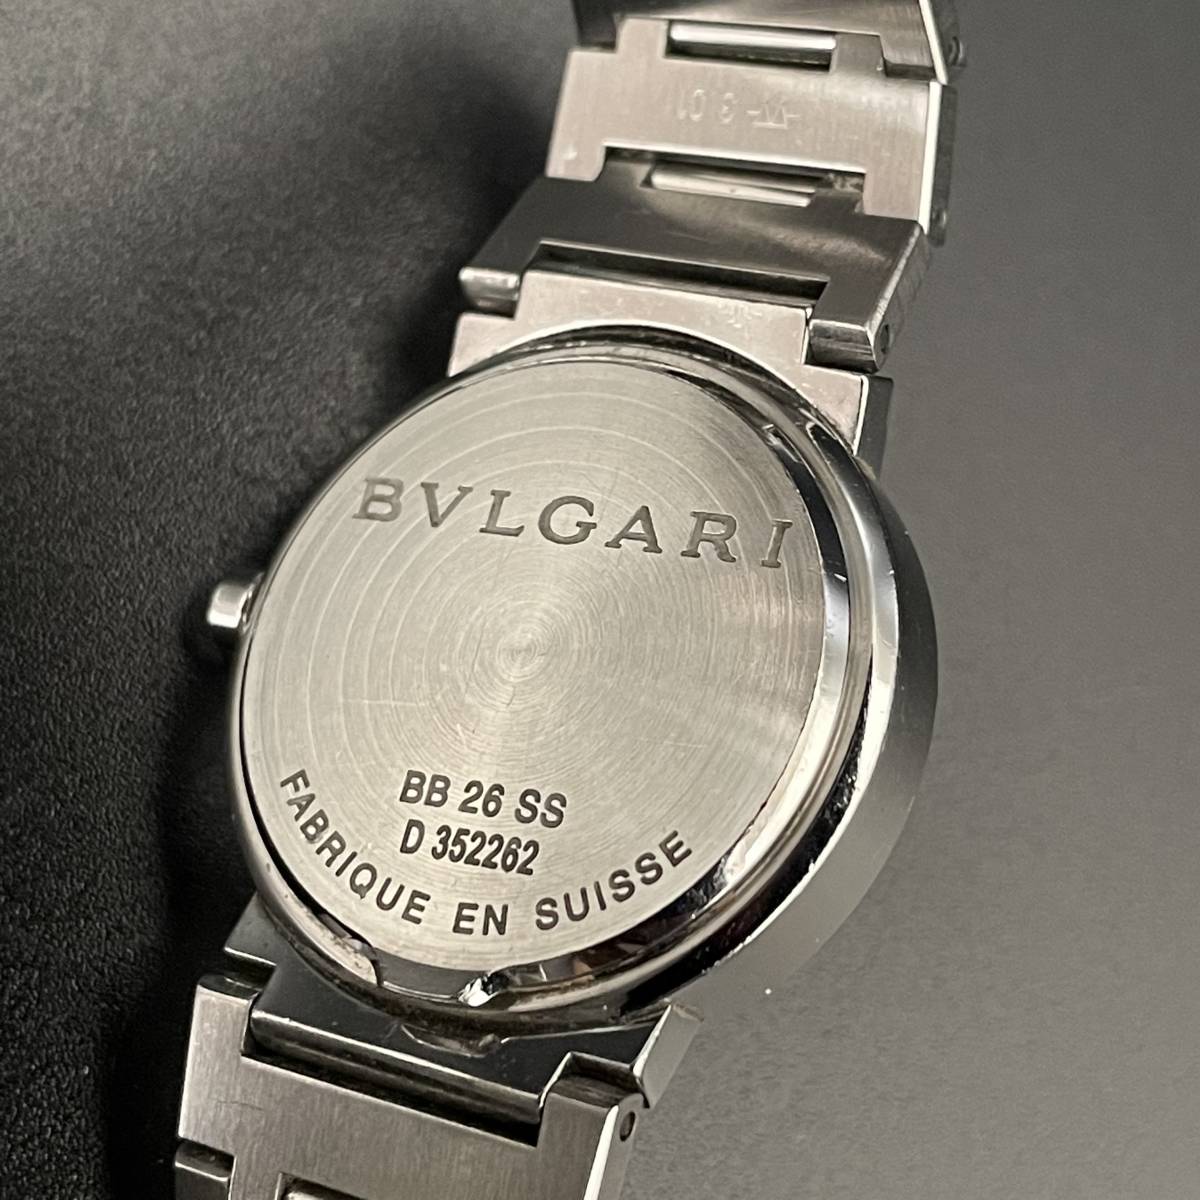 【豪華】ブルガリ BVLGARI BB26SS ブラック 黒文字盤 レディース腕時計 クオーツ 付属品有 シルバー 保証書付 動作良好 送料無料